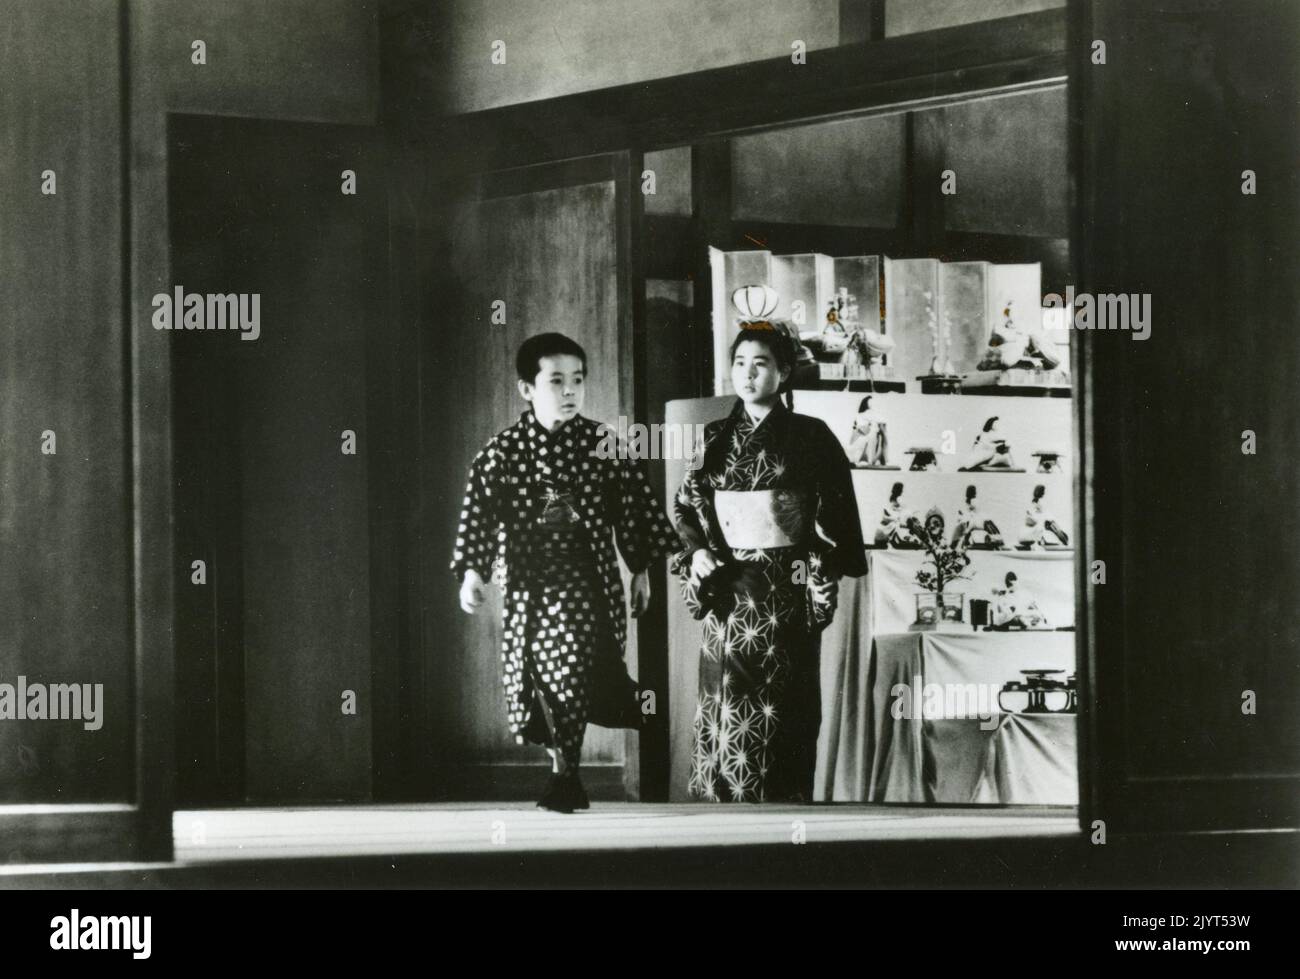 Scène du film Dreams by Akira Kurosawa, Japon 1990 Banque D'Images